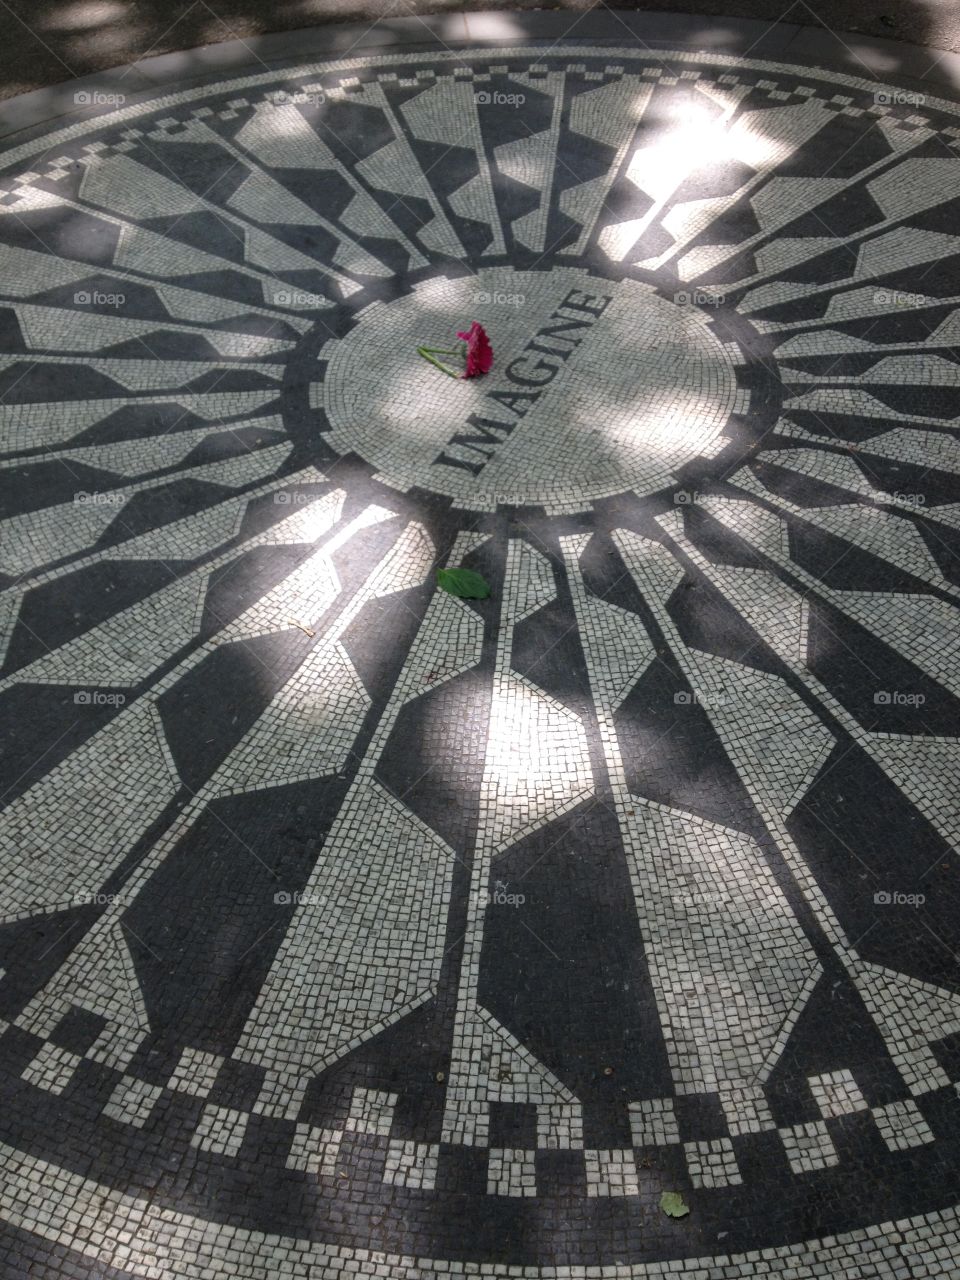 John Lennon memorial, NY city
